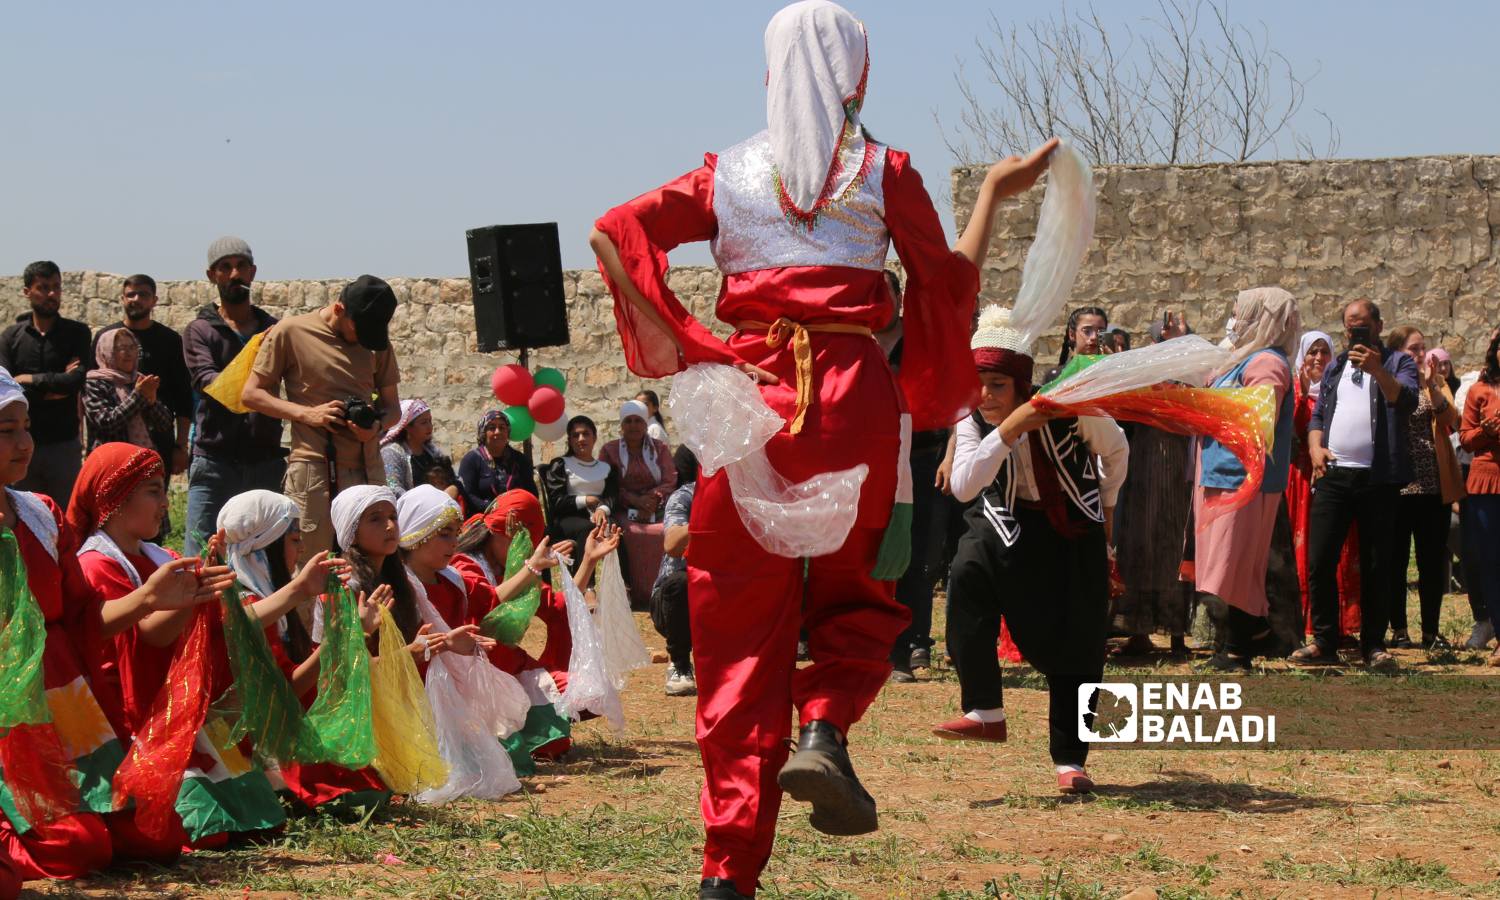 الإيزيديون يحتفلون بعيد "الأربعاء الأحمر"- أول أربعاء في نيسان حسب التقويم الشرقي- في عفرين - 17 من نيسان 2024 (/ديان جنباز)